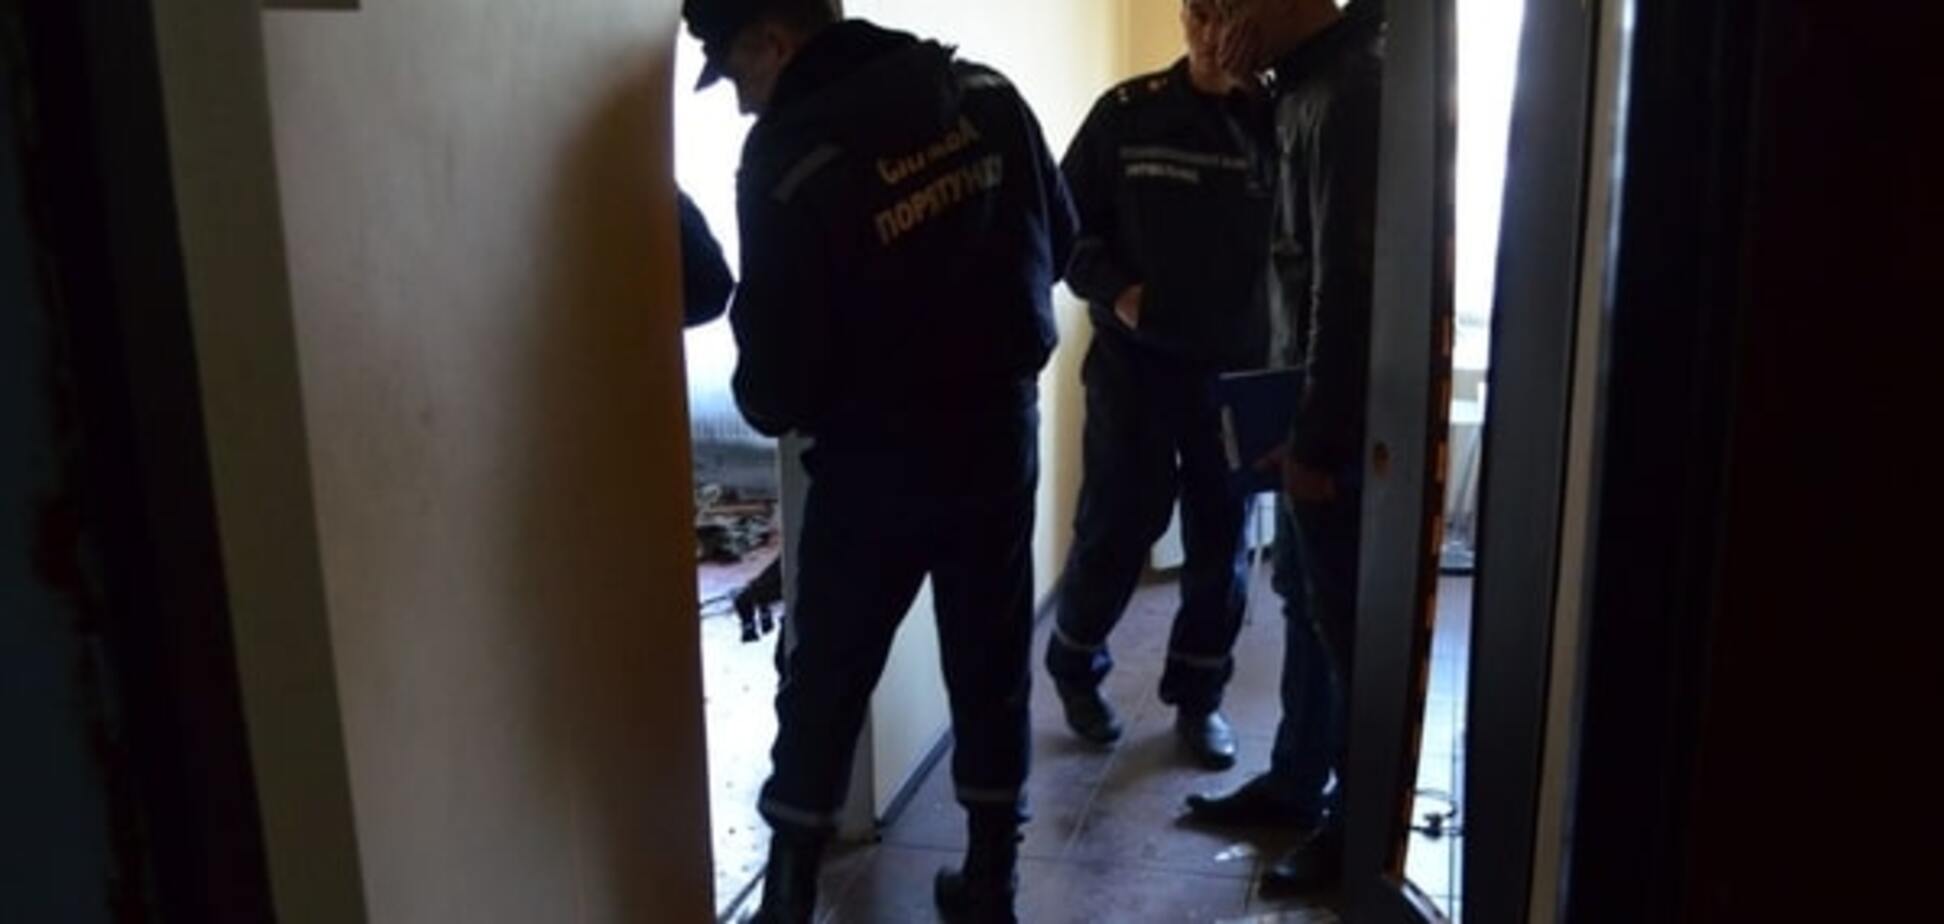 У Миколаєві в квартирі від вибуху гранати постраждав чоловік: опубліковані фото